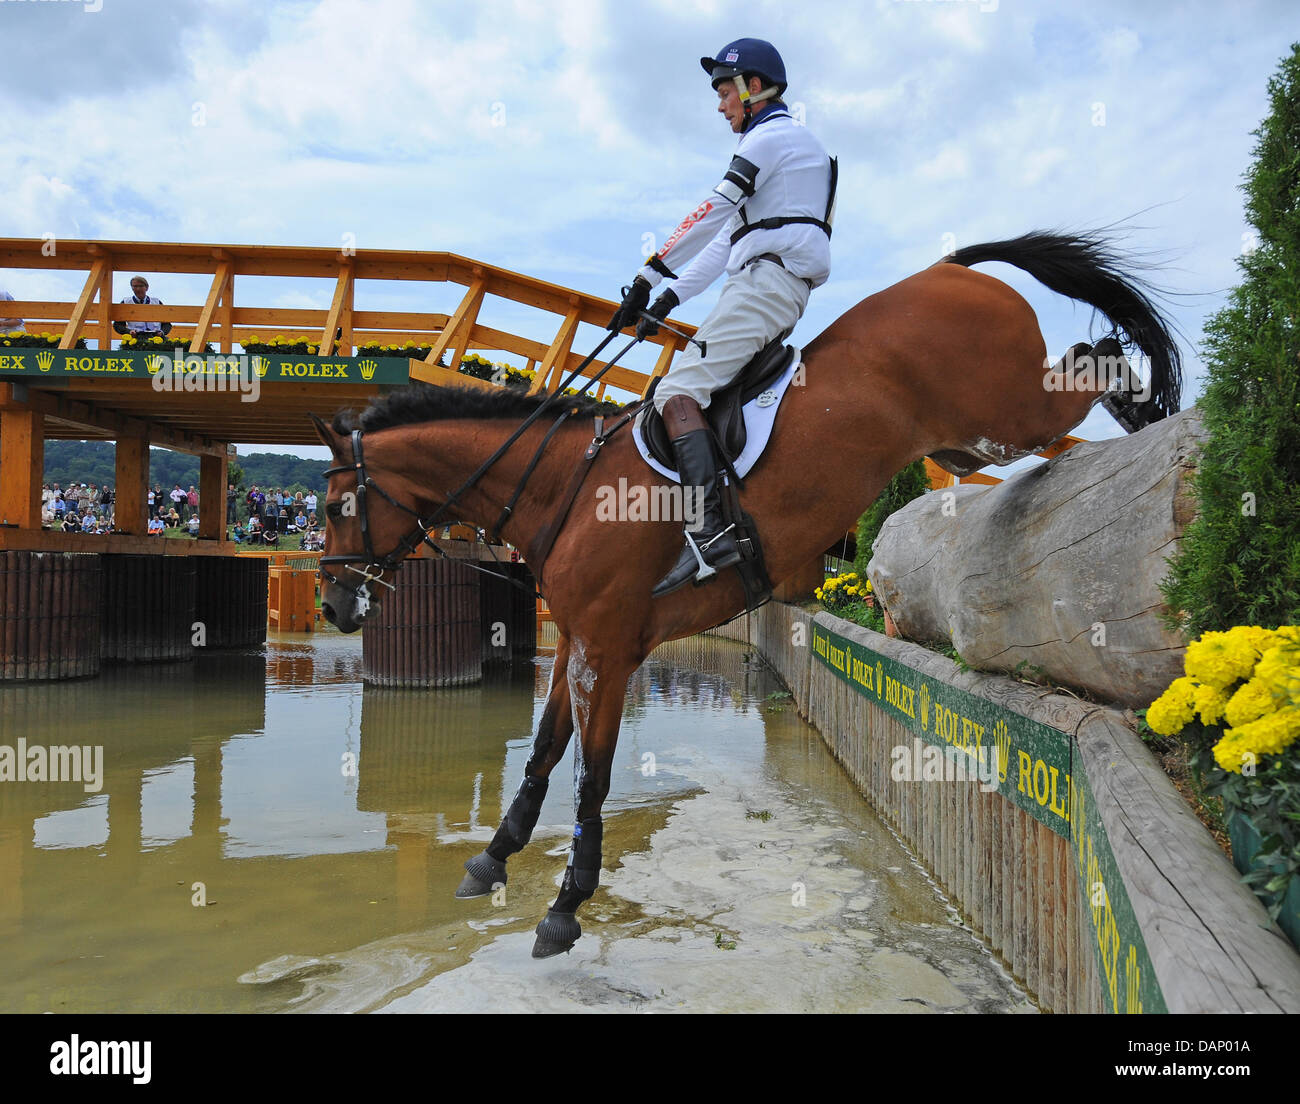 Equestrian dressage britannique William Fox-Pitt saute par dessus un obstacle naturel avec son cheval Neuf des coeurs pendant les essais au sol à Aix-la-Chapelle, Allemagne, 16 juillet 2011. Il a remporté la troisième place. Photo : Uwe Anspach Banque D'Images